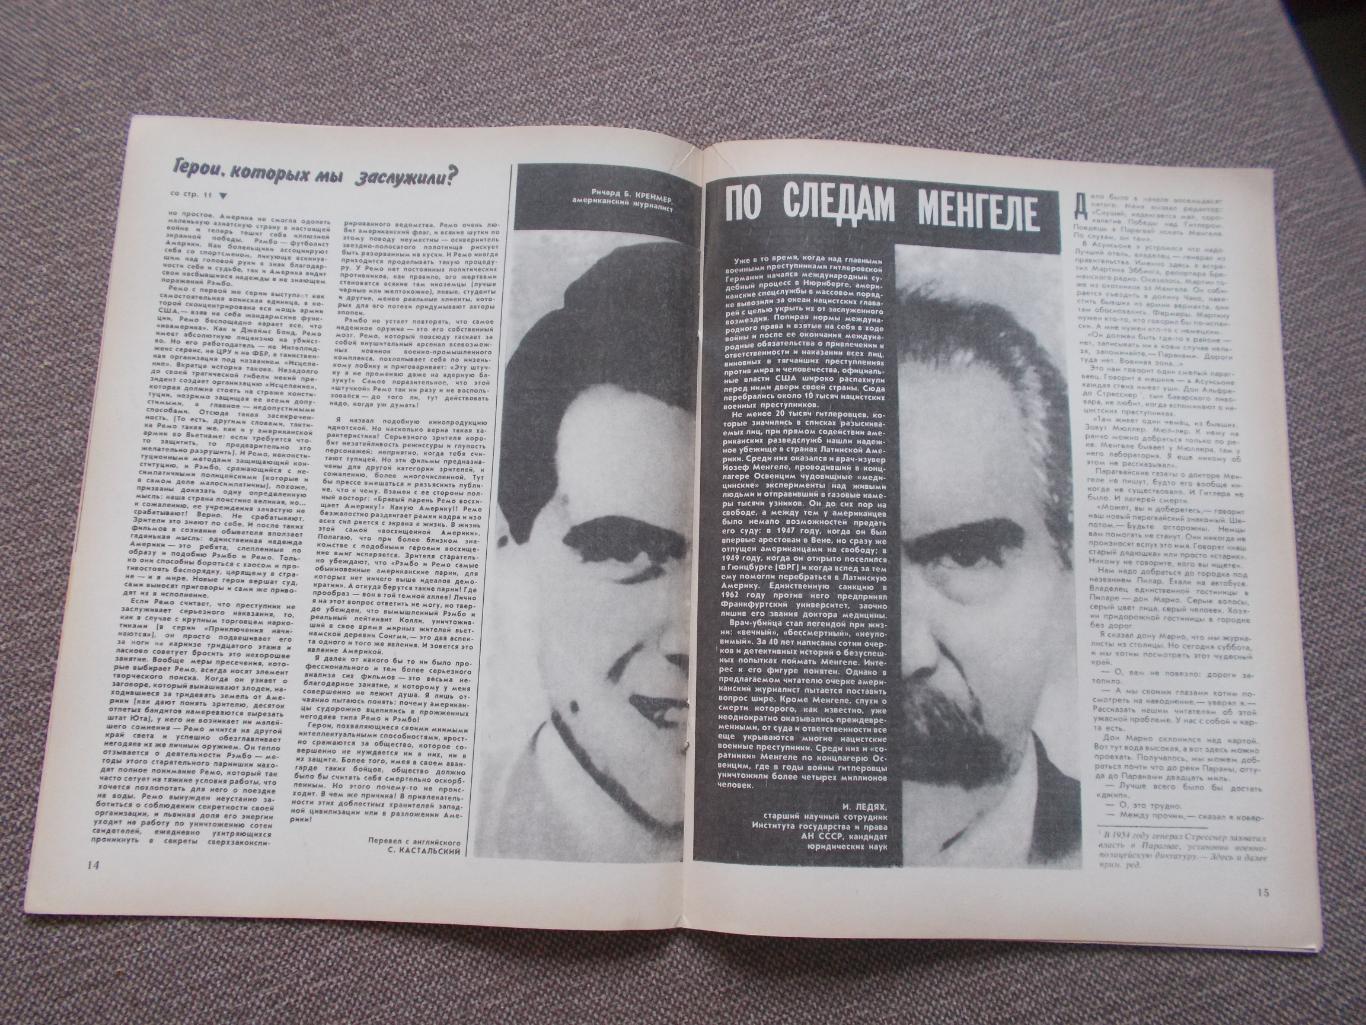 Журнал СССР :Ровесник№ 5 (май) 1986 г. (Молодежный музыкальный журнал) 6